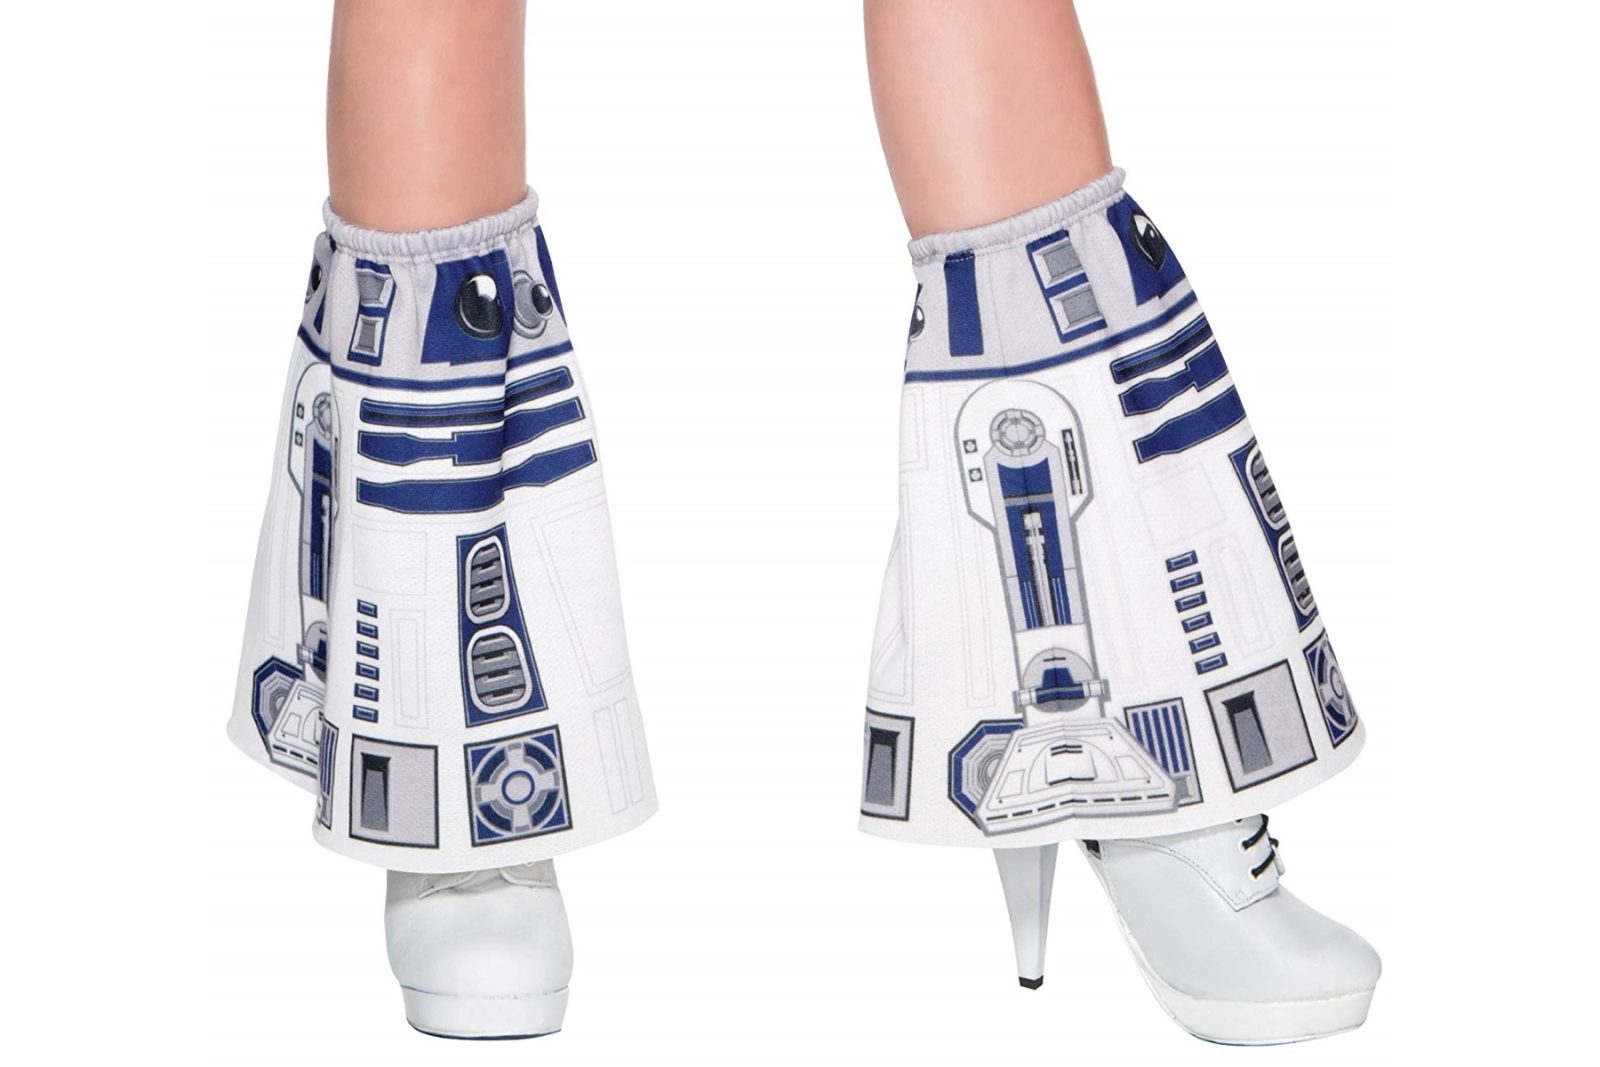 Rubies x Star Wars R2-D2 Everyday Cosplay Style Legwear on Amazon